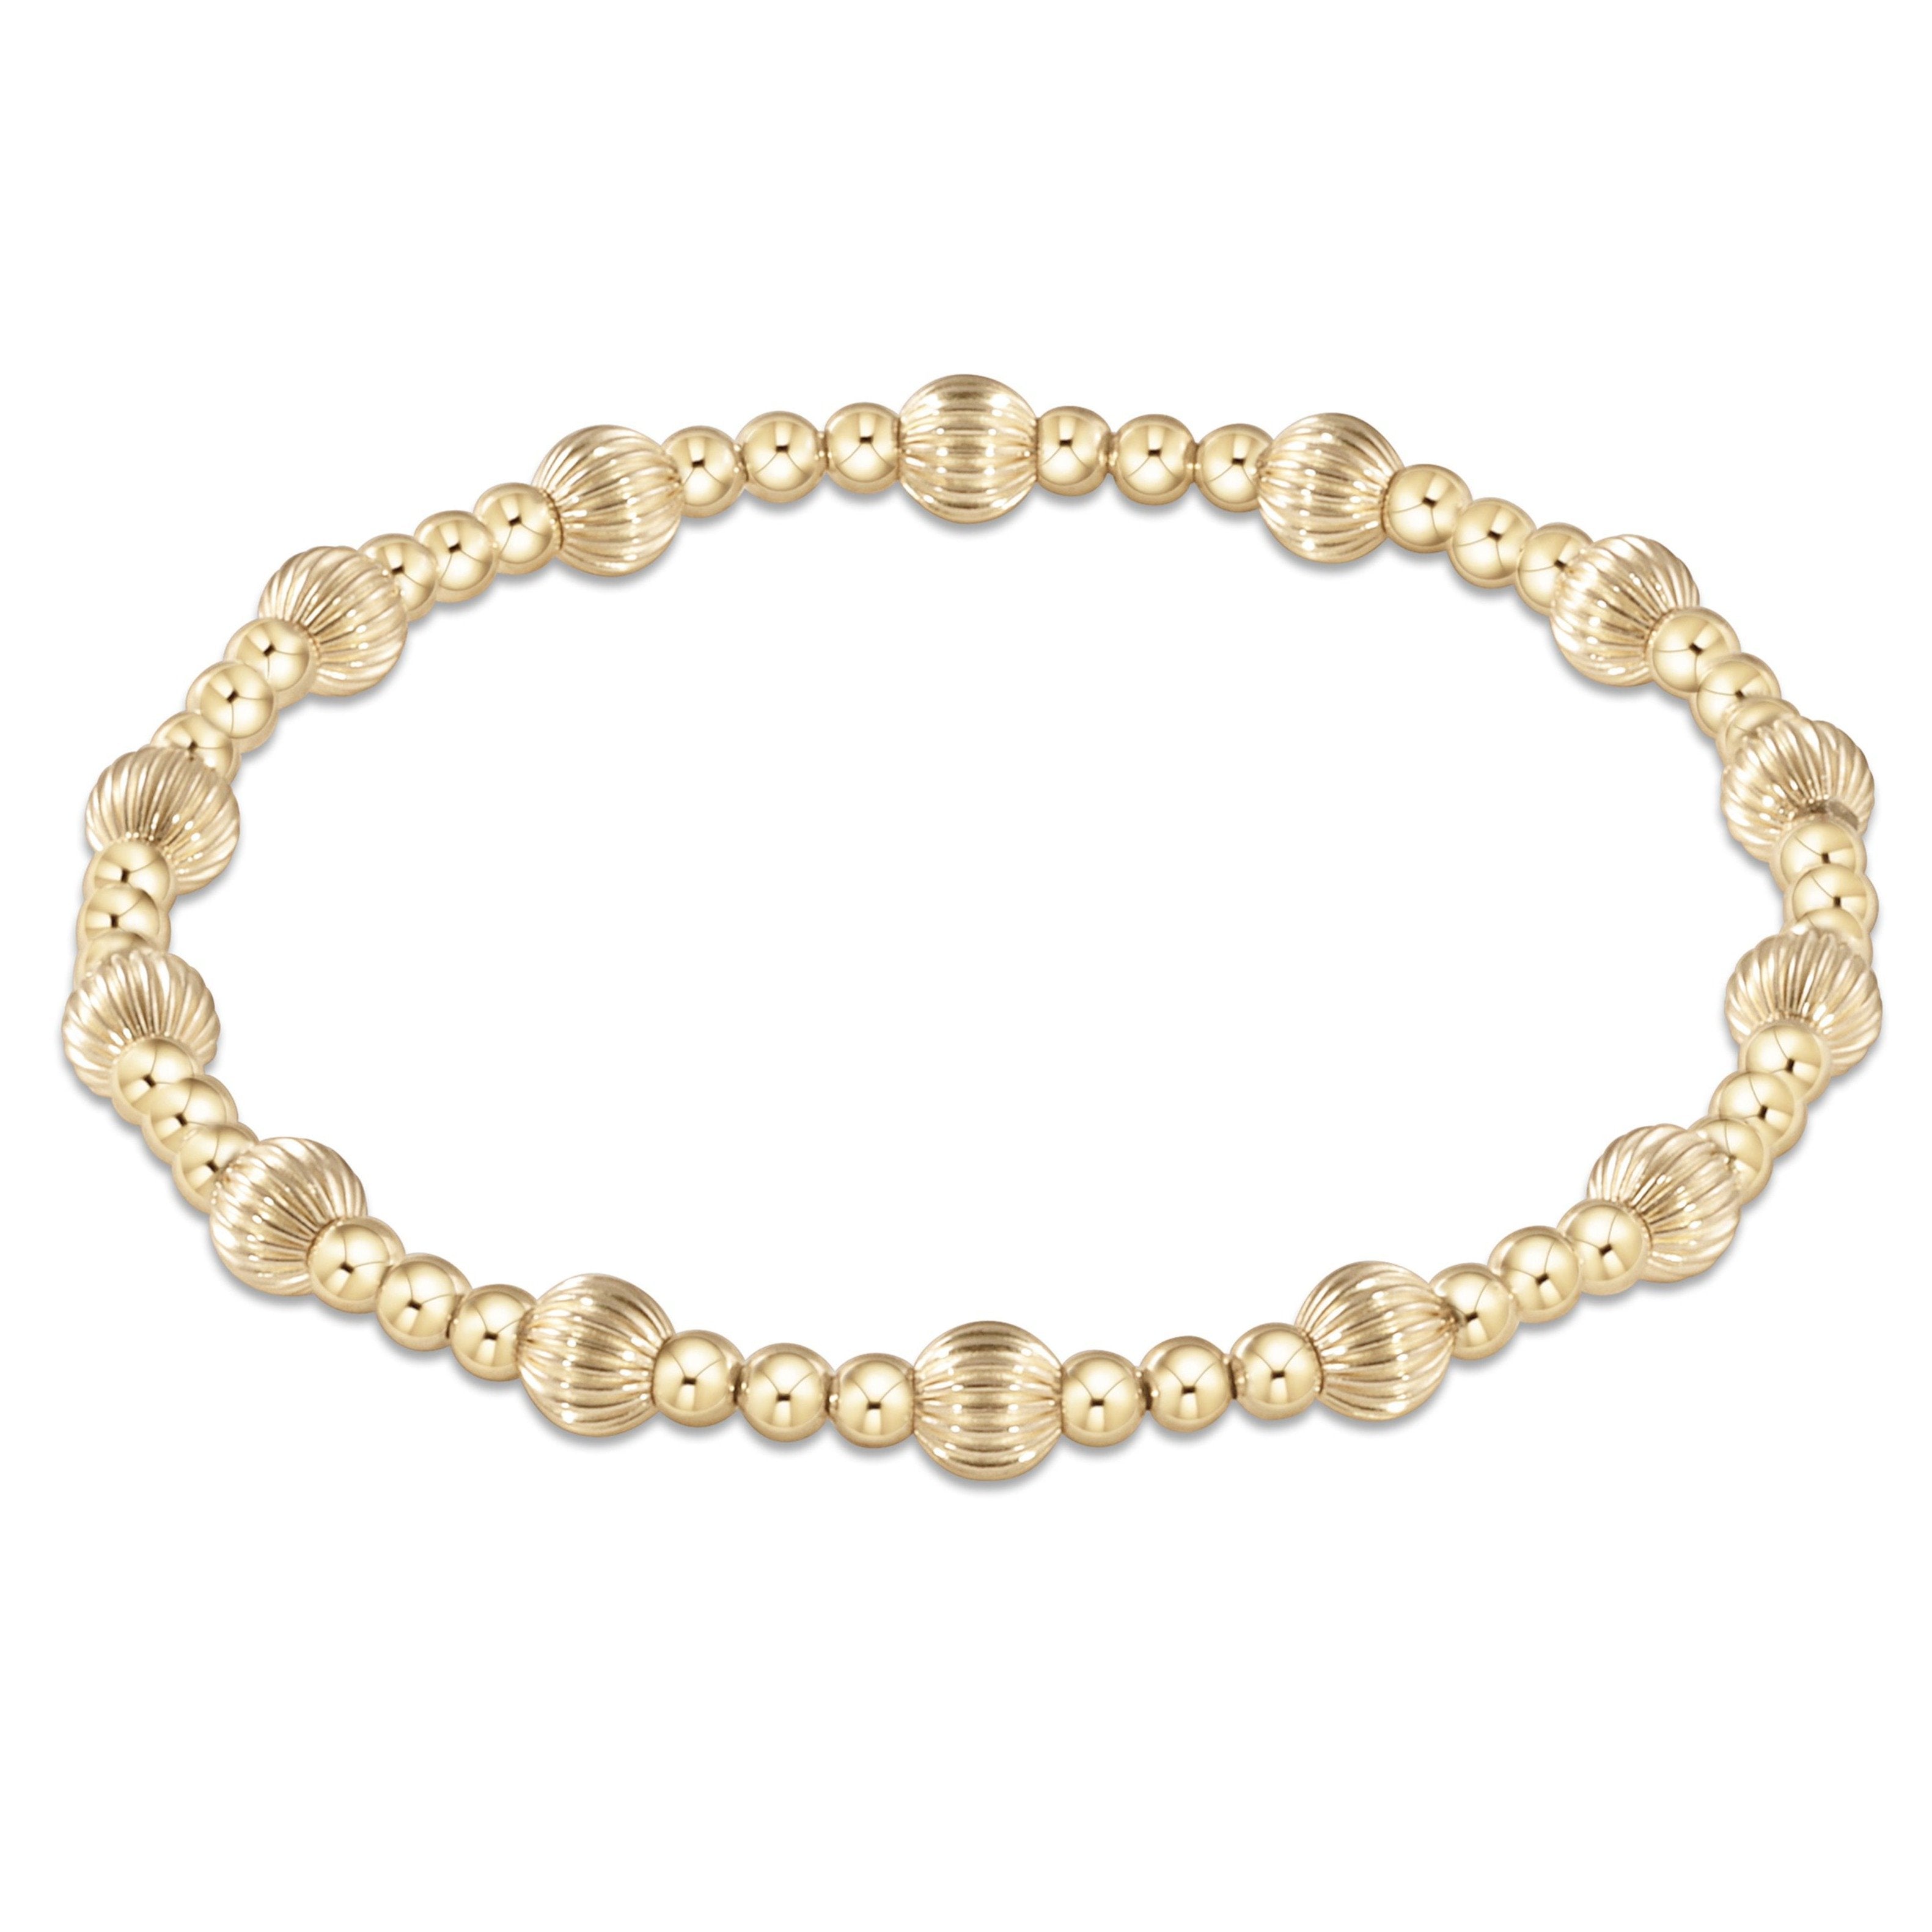 enewton Extends - Dignity Sincerity Pattern 5mm Bead Bracelet - Gold